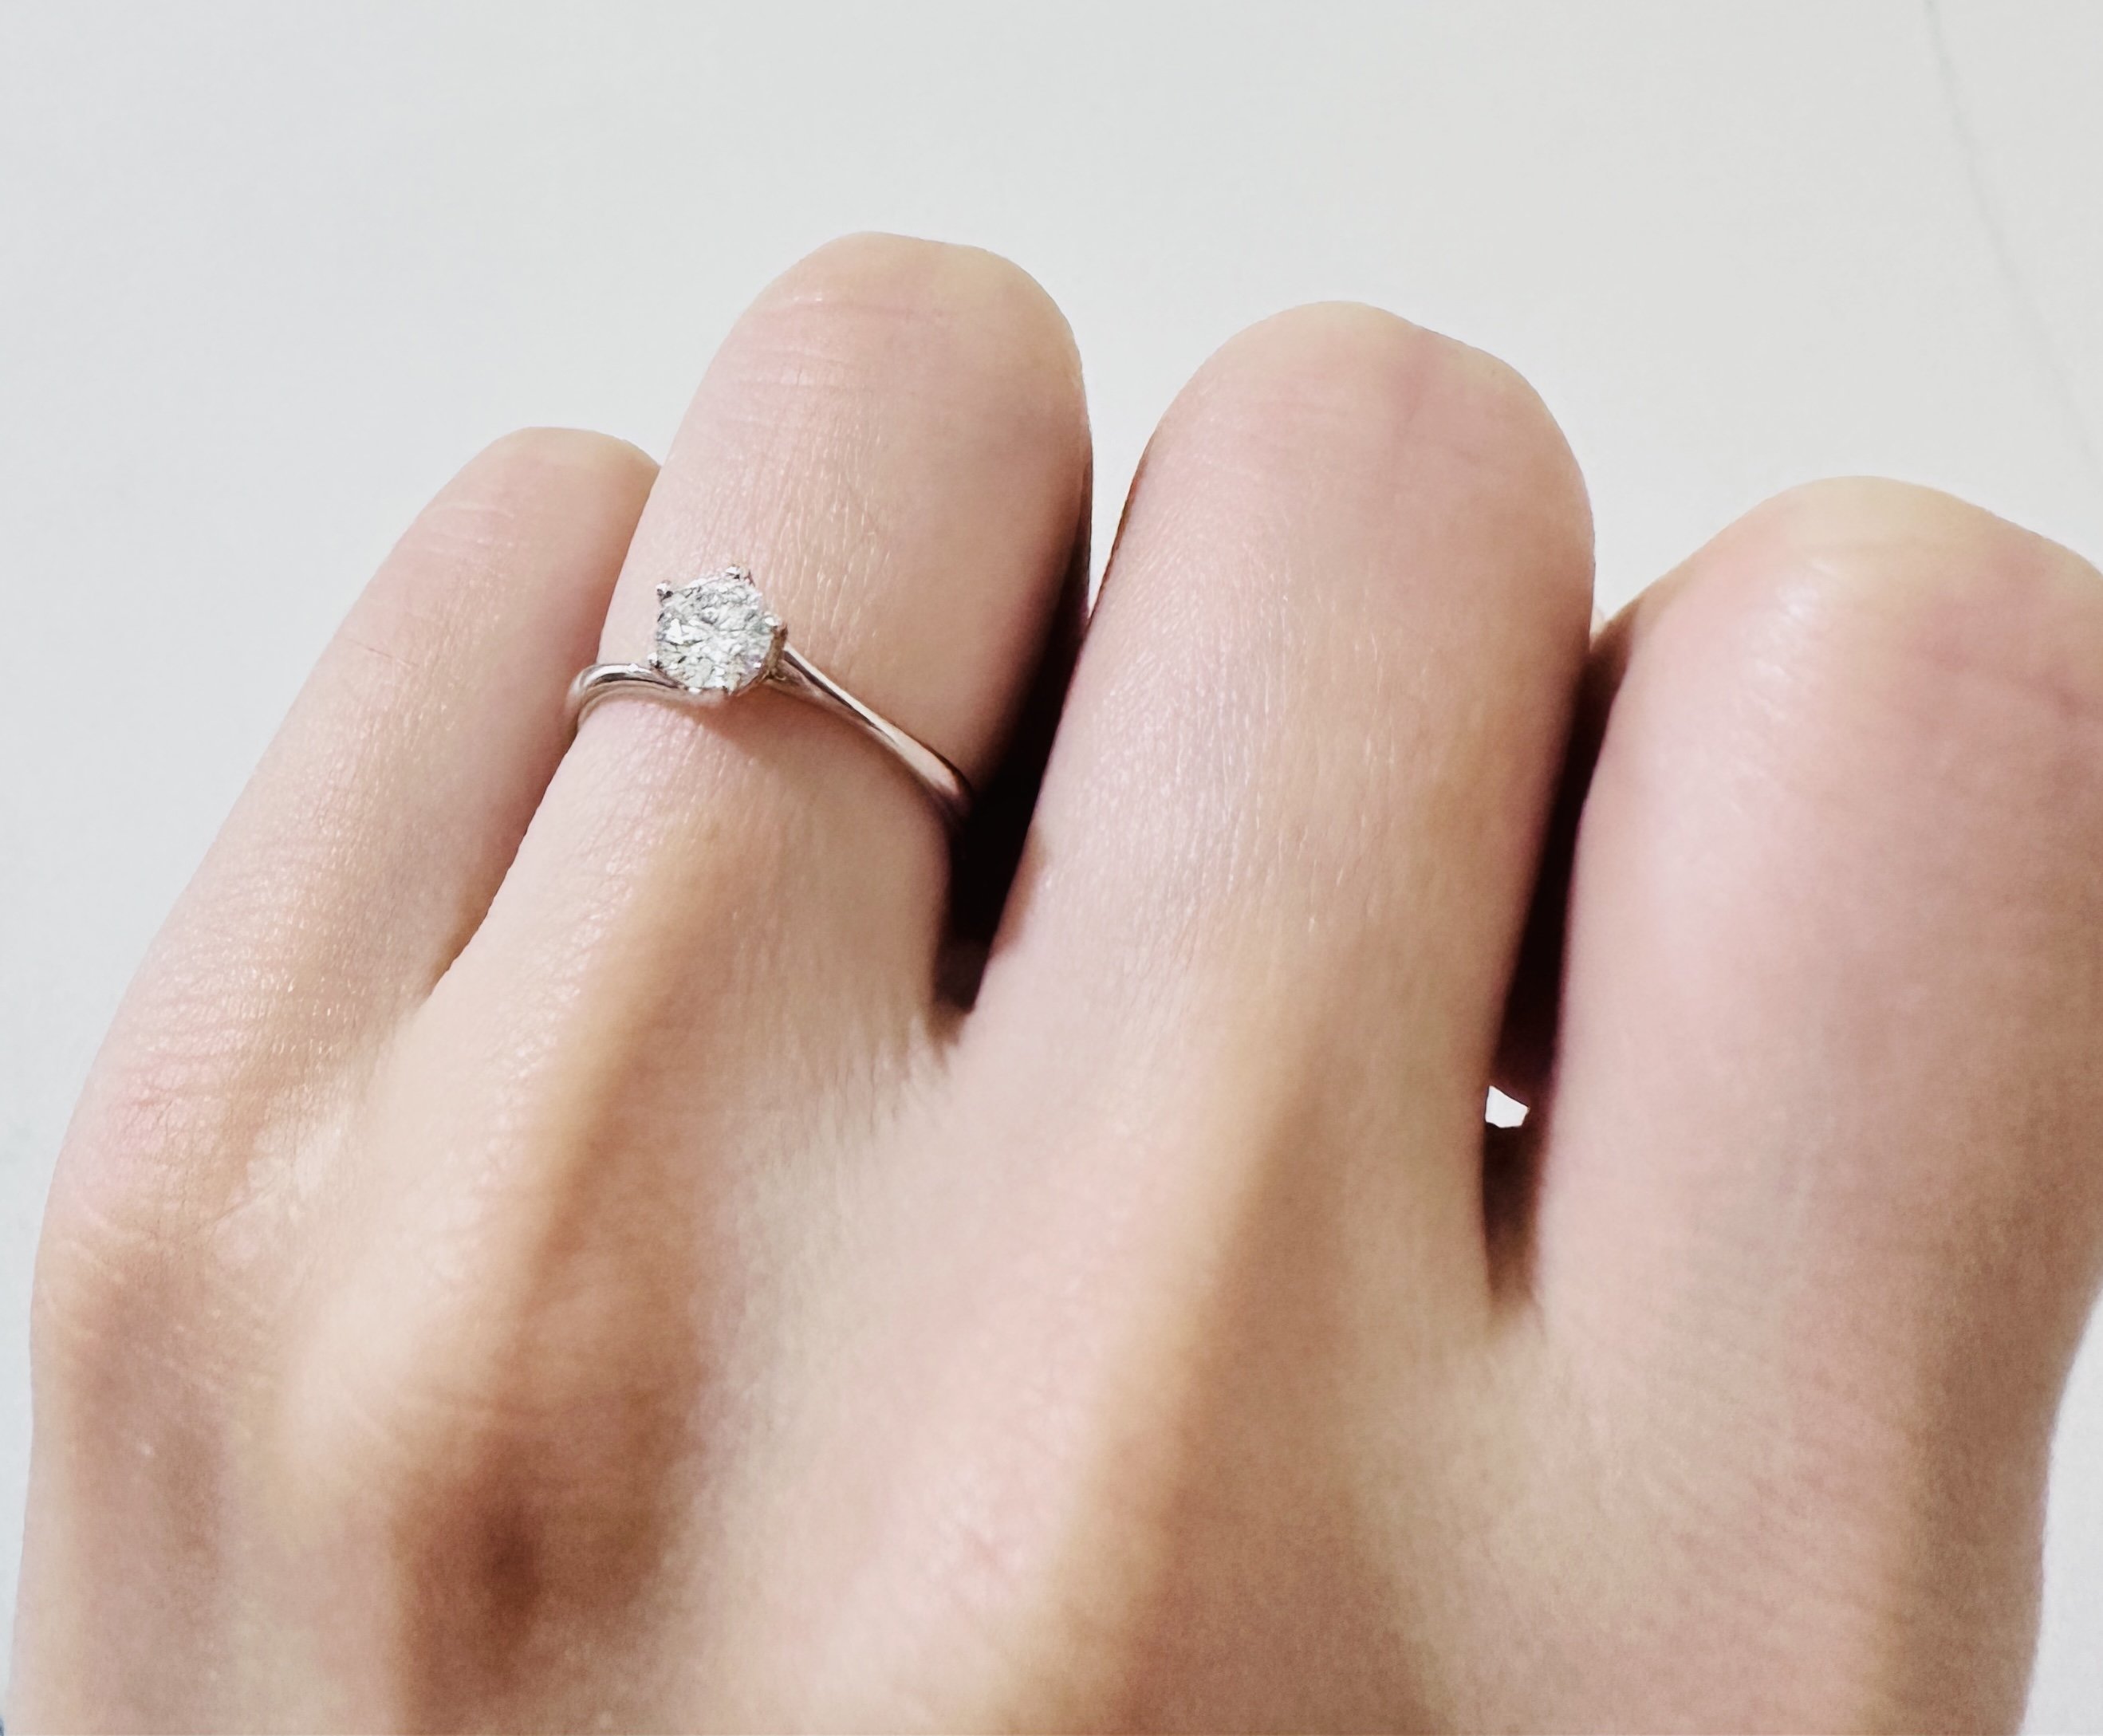 #求婚 求婚規劃紀錄-求婚戒指篇#亞爵鑽石#量戒圍#經驗分享-結婚經驗分享